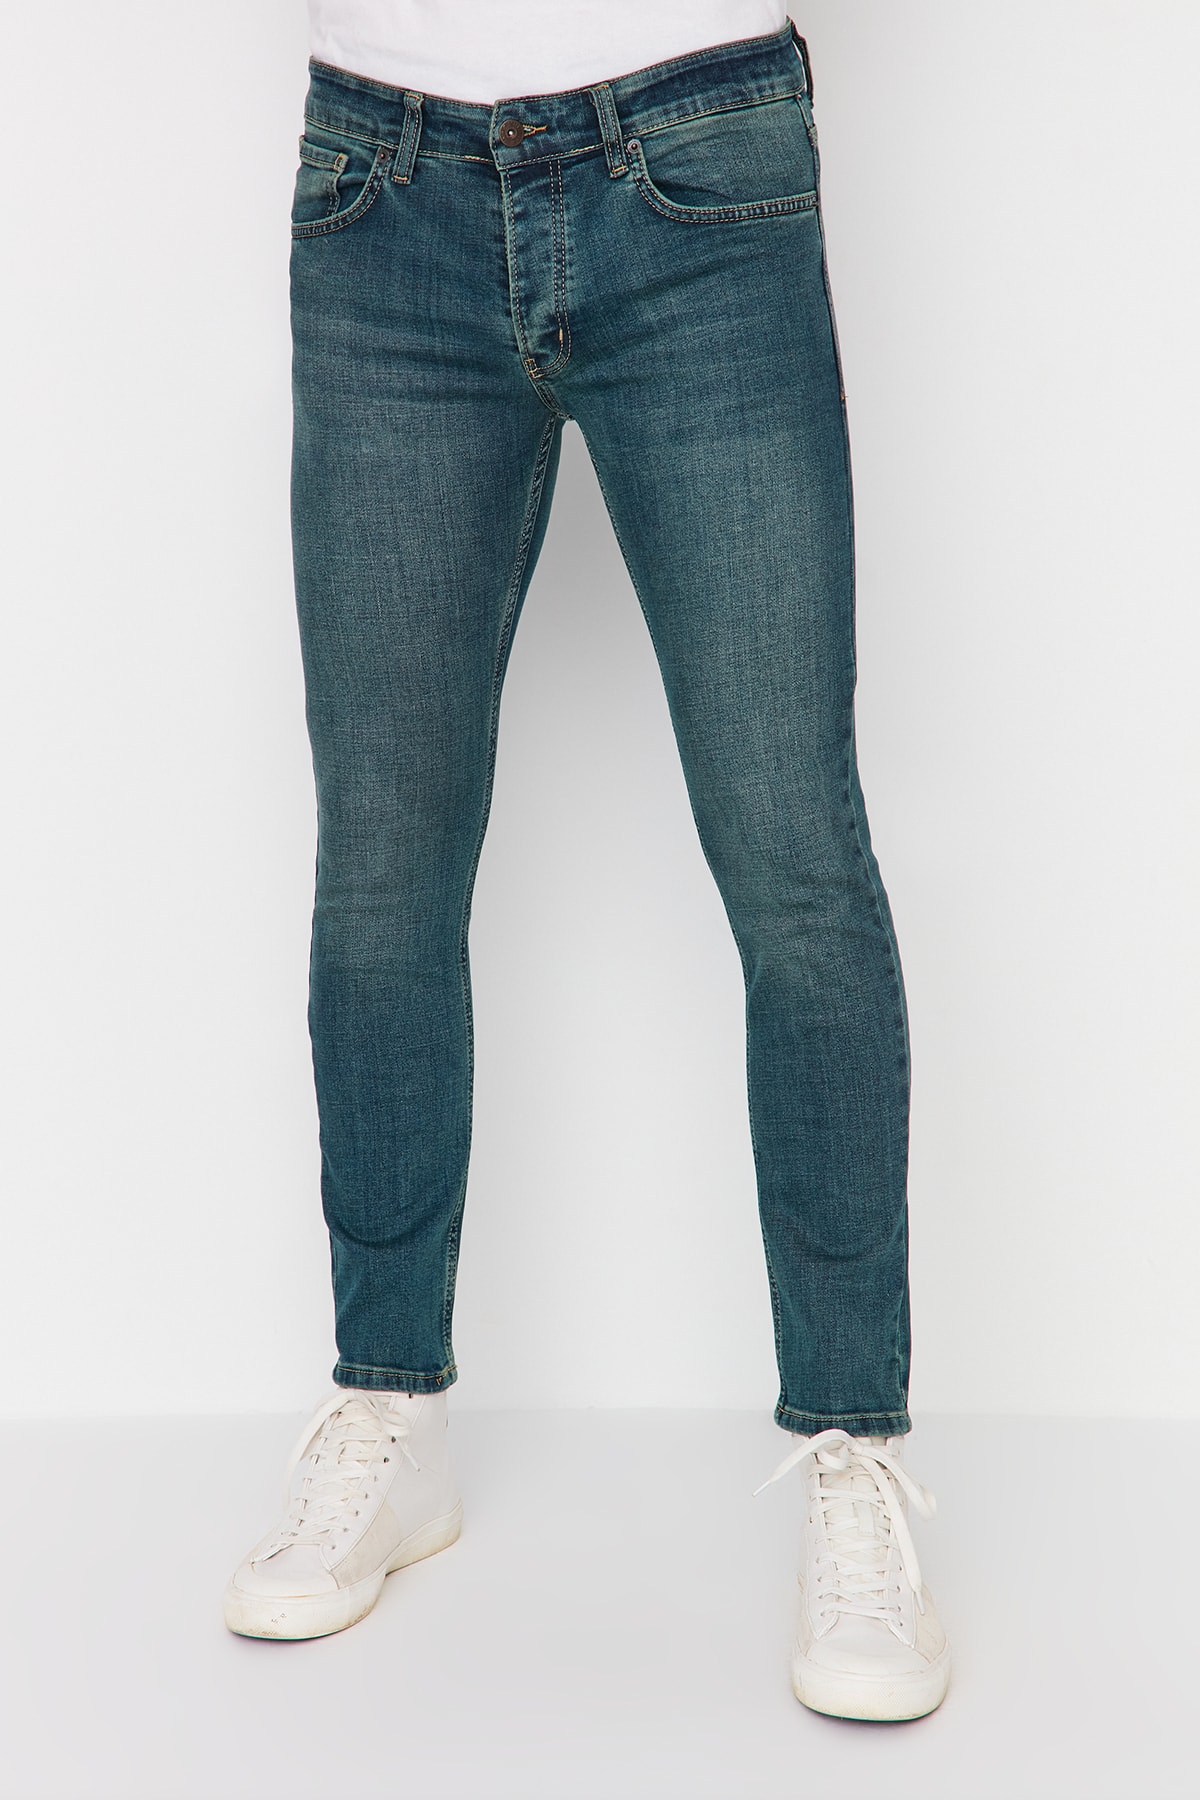 Джинсы Trendyol скинни, синий джинсы скинни размер 42 синий